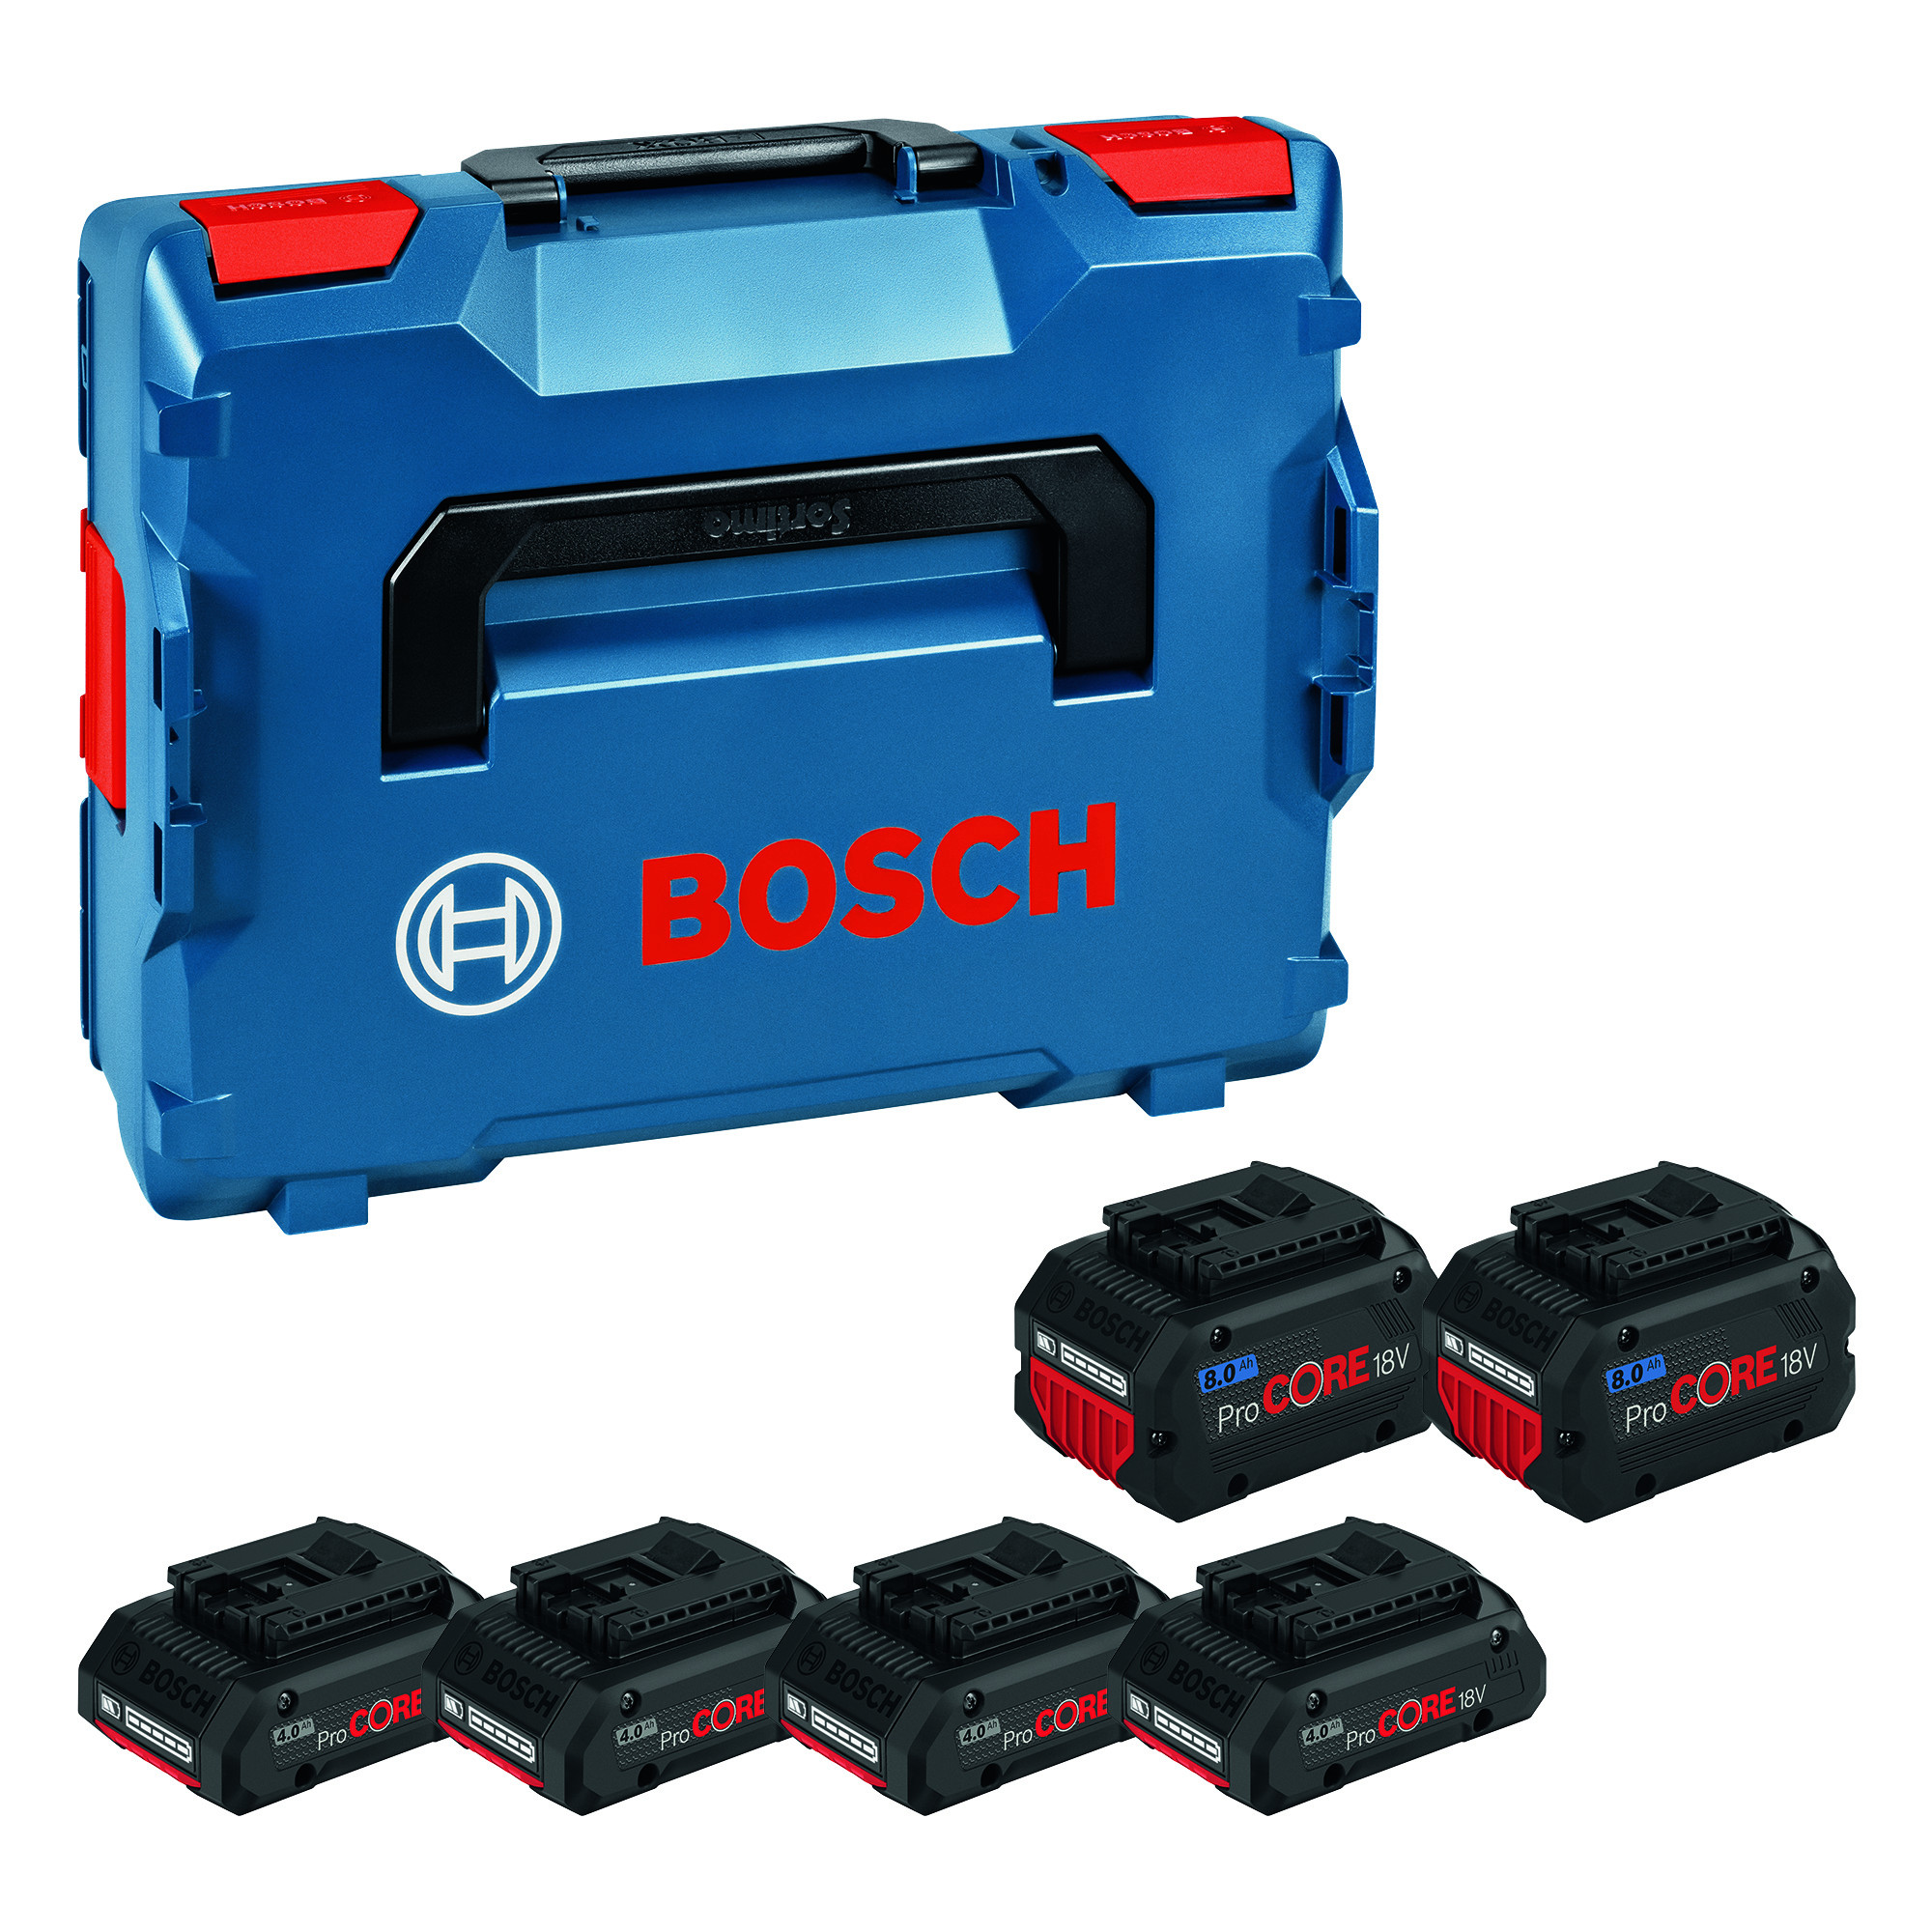 BOSCH Professional Batteripakke 4x4.0 AH + 2x8.0AH ProCORE 18V (1600A02A2T)